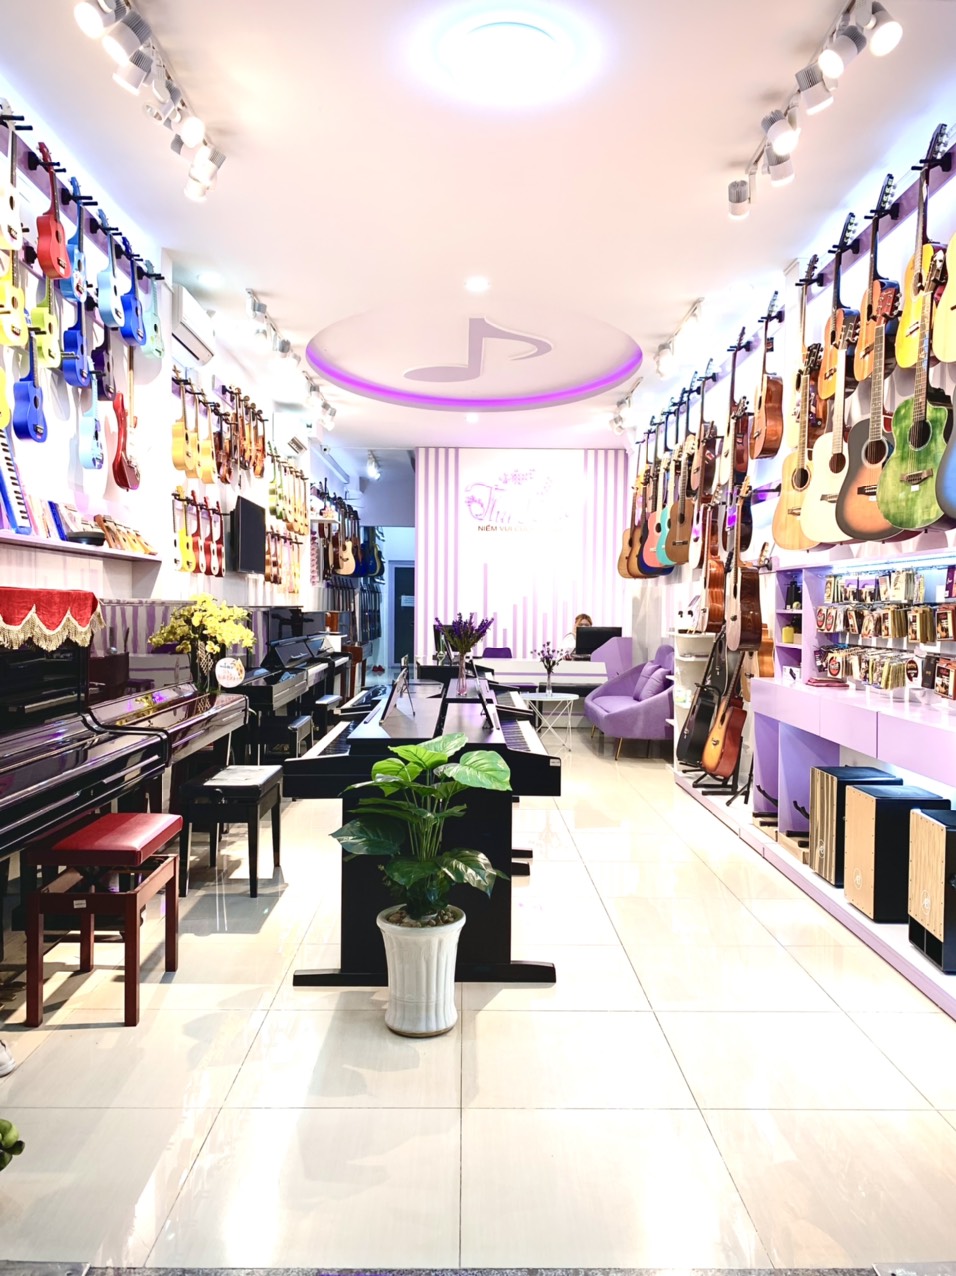 Cửa hàng mua bán nhạc cụ và phụ kiện guitar chất lượng quận 1